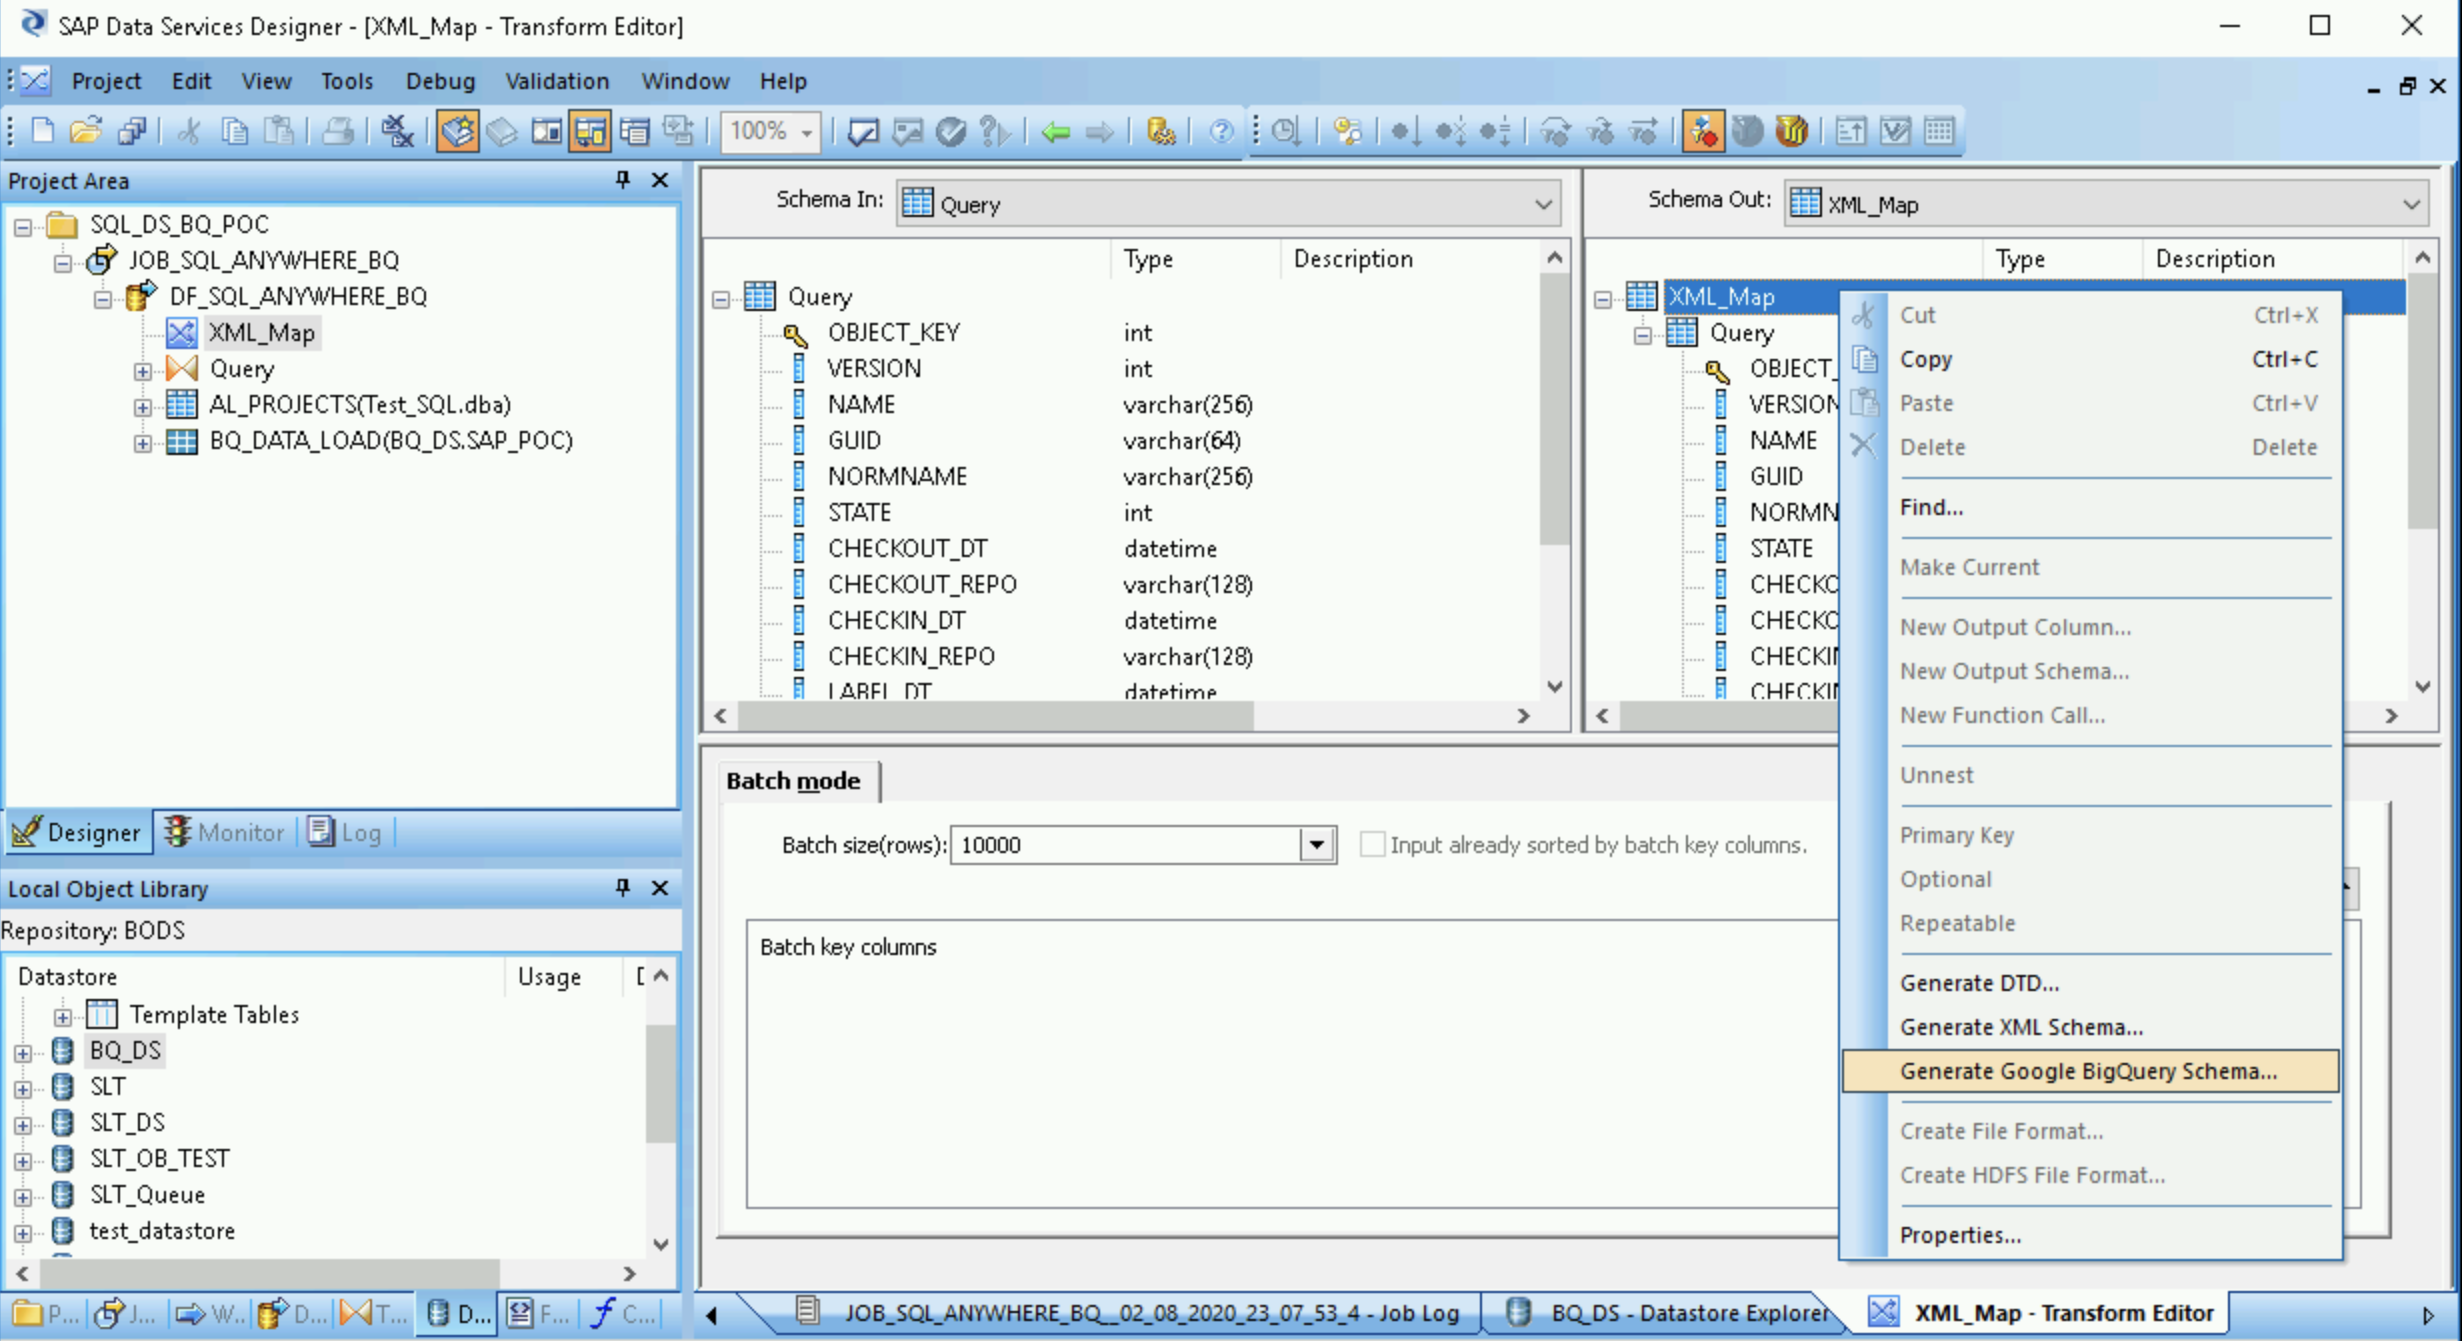 Uma captura de tela do SAP Data Services Designer mostrando o menu suspenso para gerar um esquema do Google BigQuery.